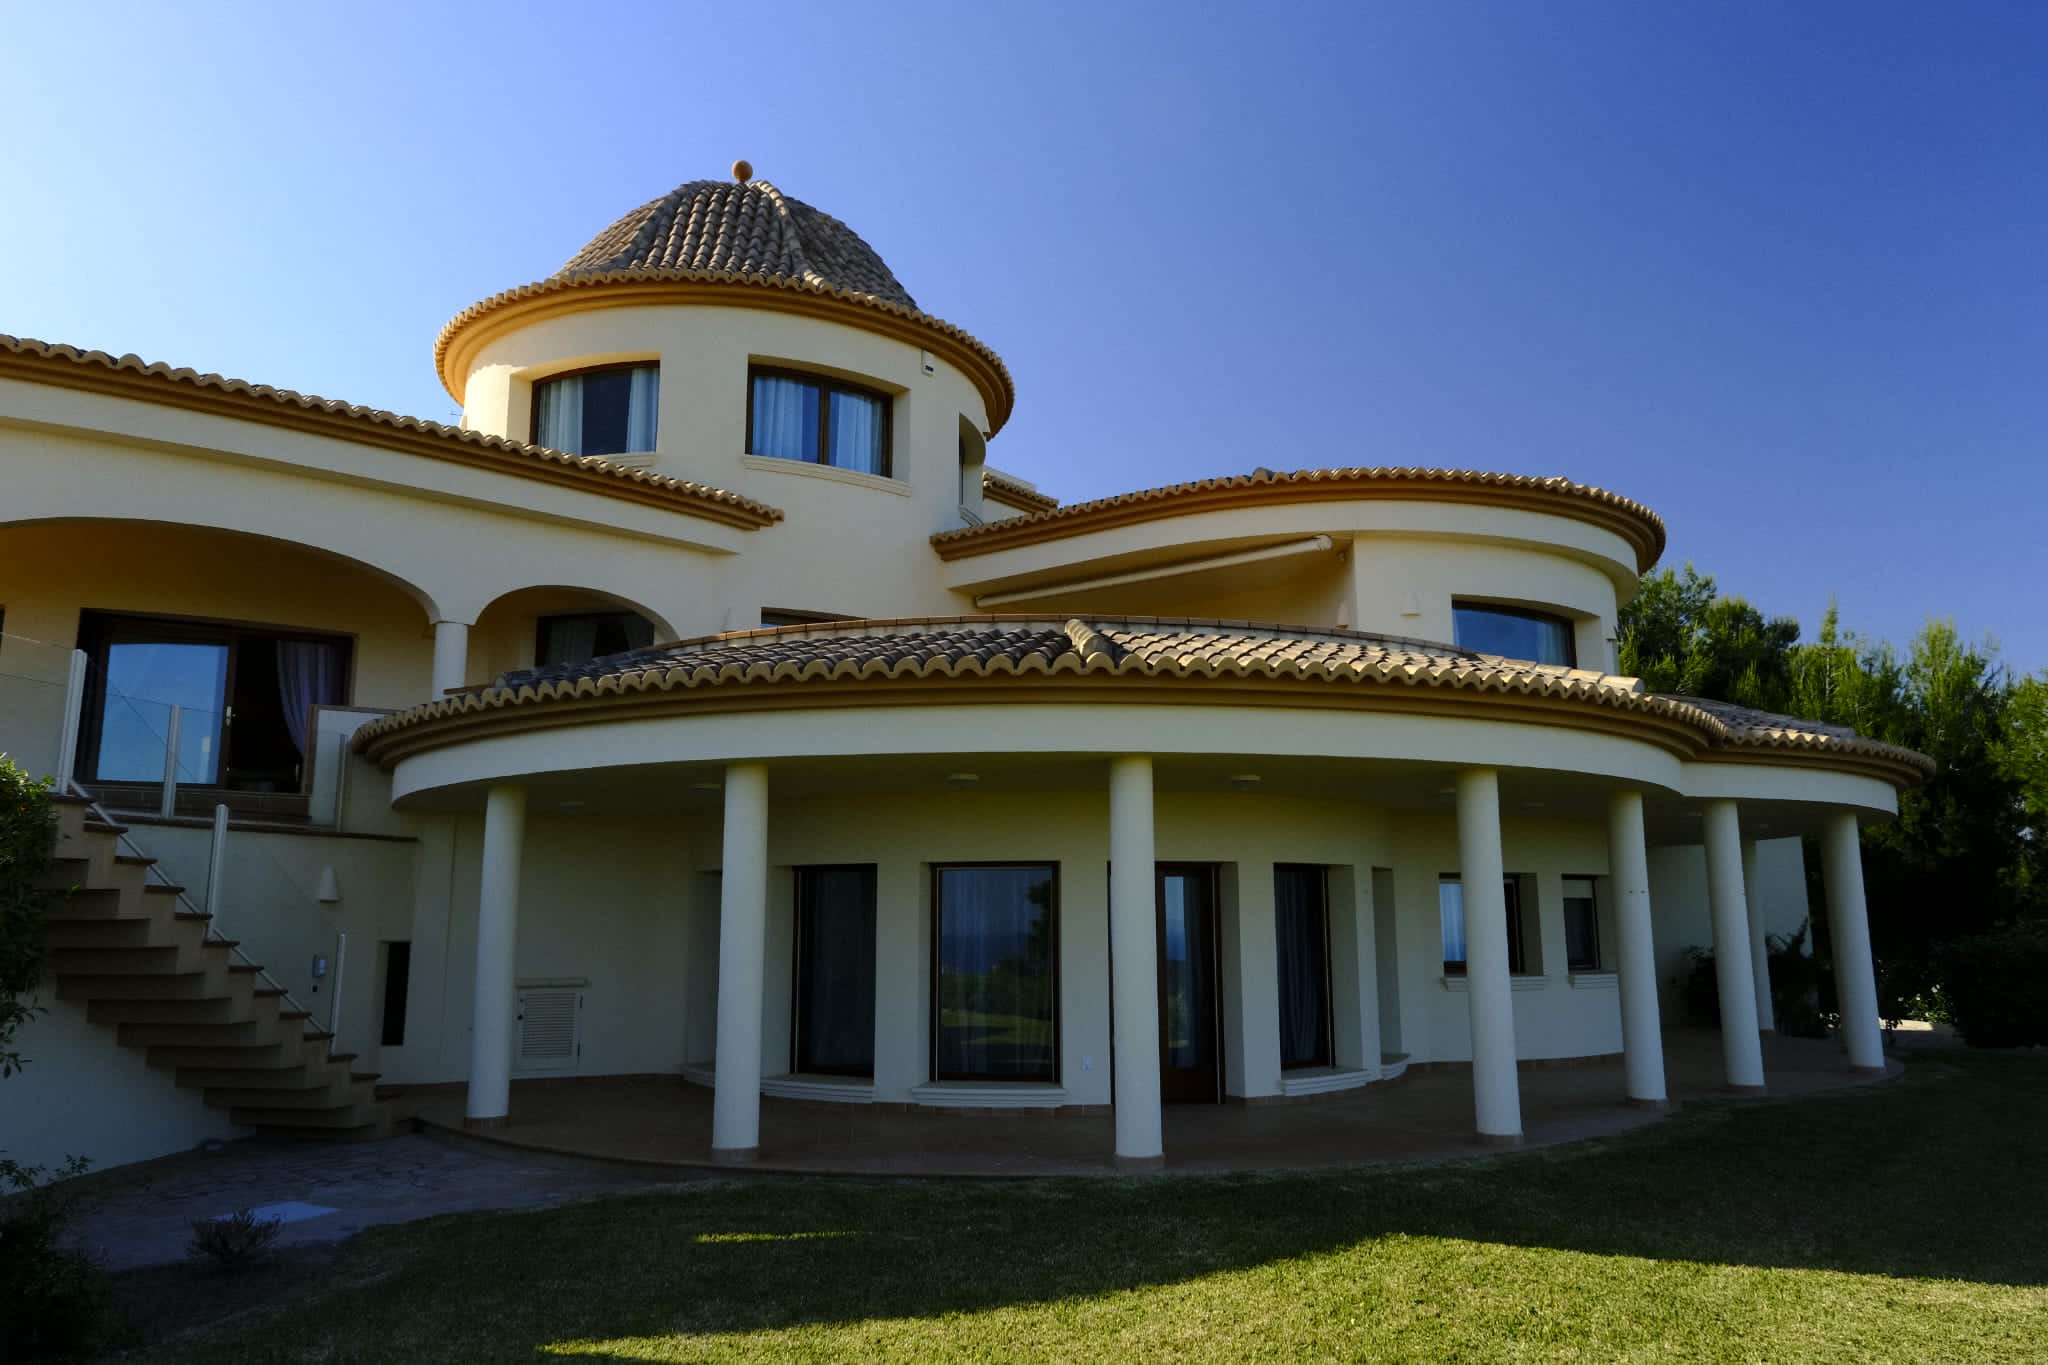 Única y exclusiva mansión de lujo, en tres plantas, en venta en la zona de Calpe-Benissa